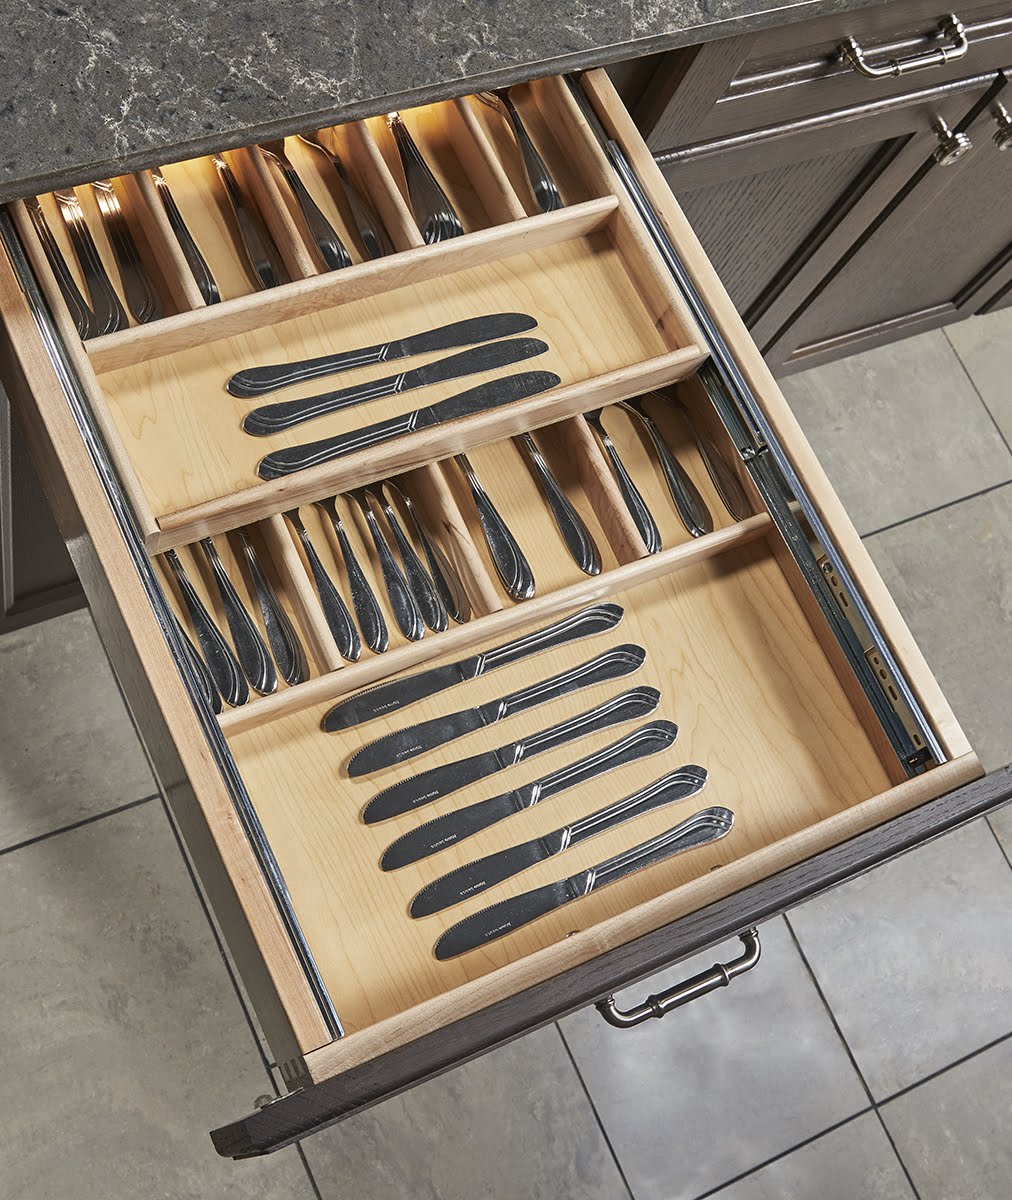 Organizing Kitchen Drawers - KBIS 2019 - Wellborn Cabinet